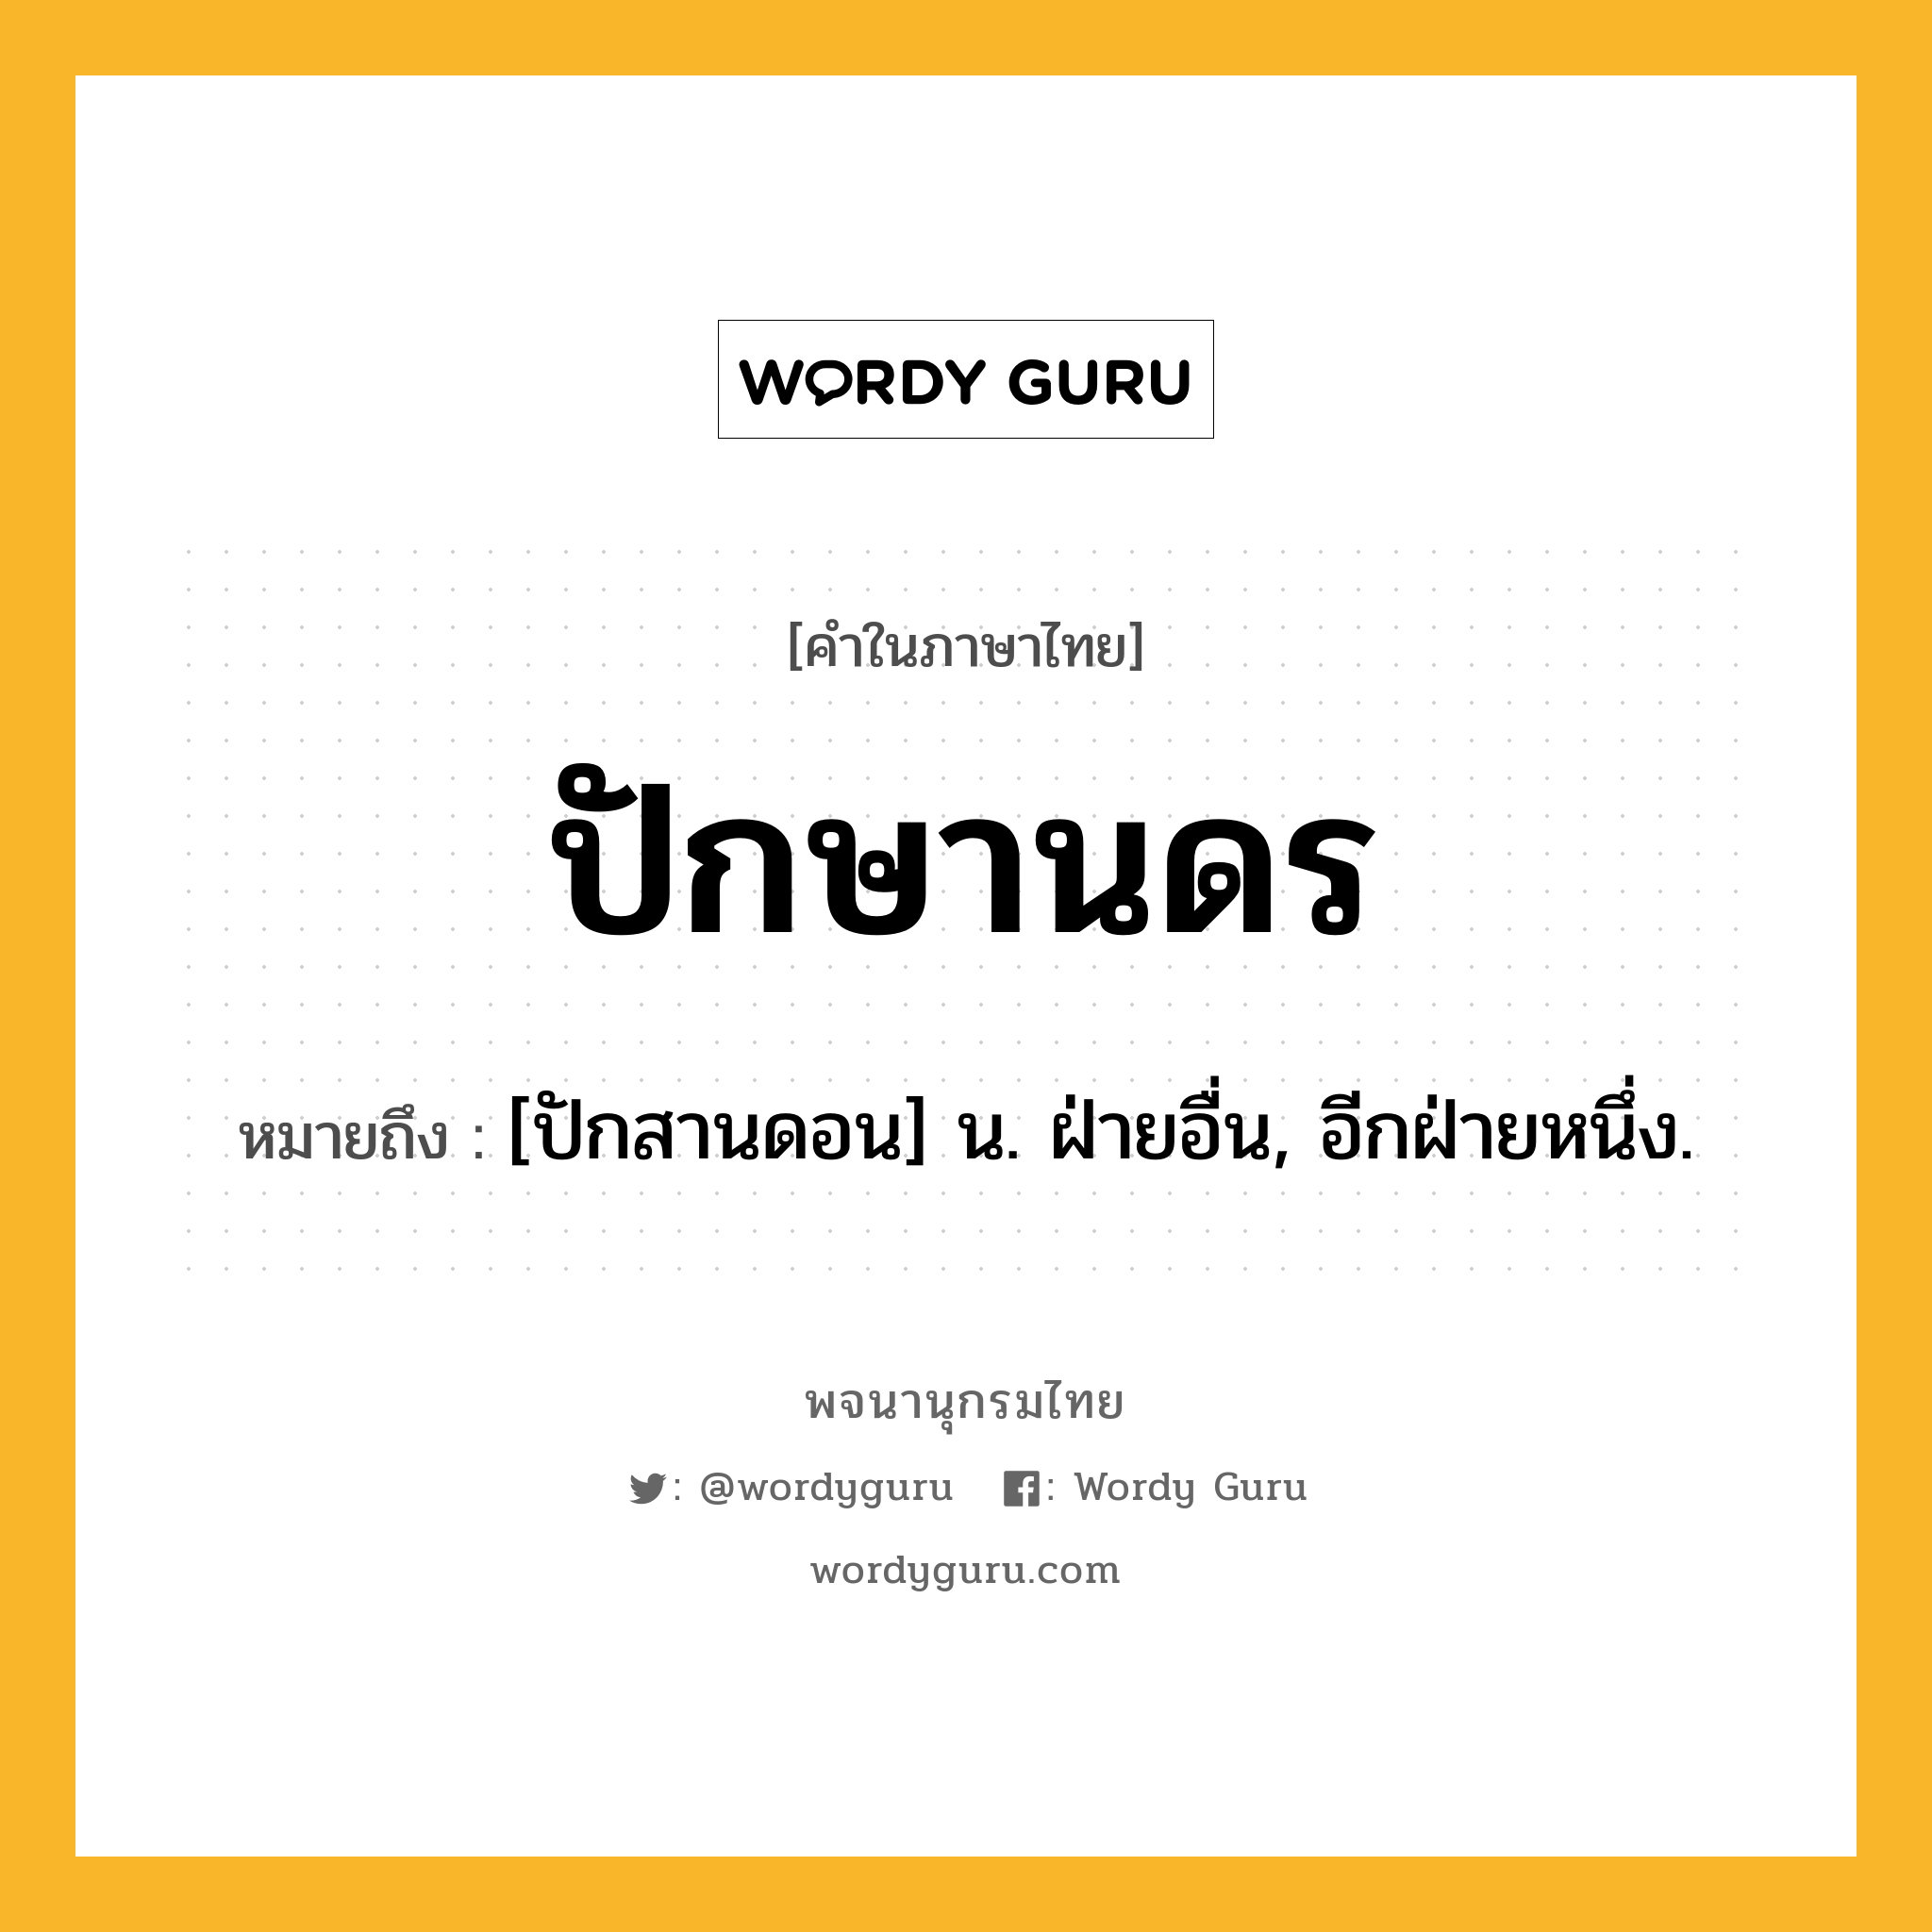 ปักษานดร หมายถึงอะไร?, คำในภาษาไทย ปักษานดร หมายถึง [ปักสานดอน] น. ฝ่ายอื่น, อีกฝ่ายหนึ่ง.